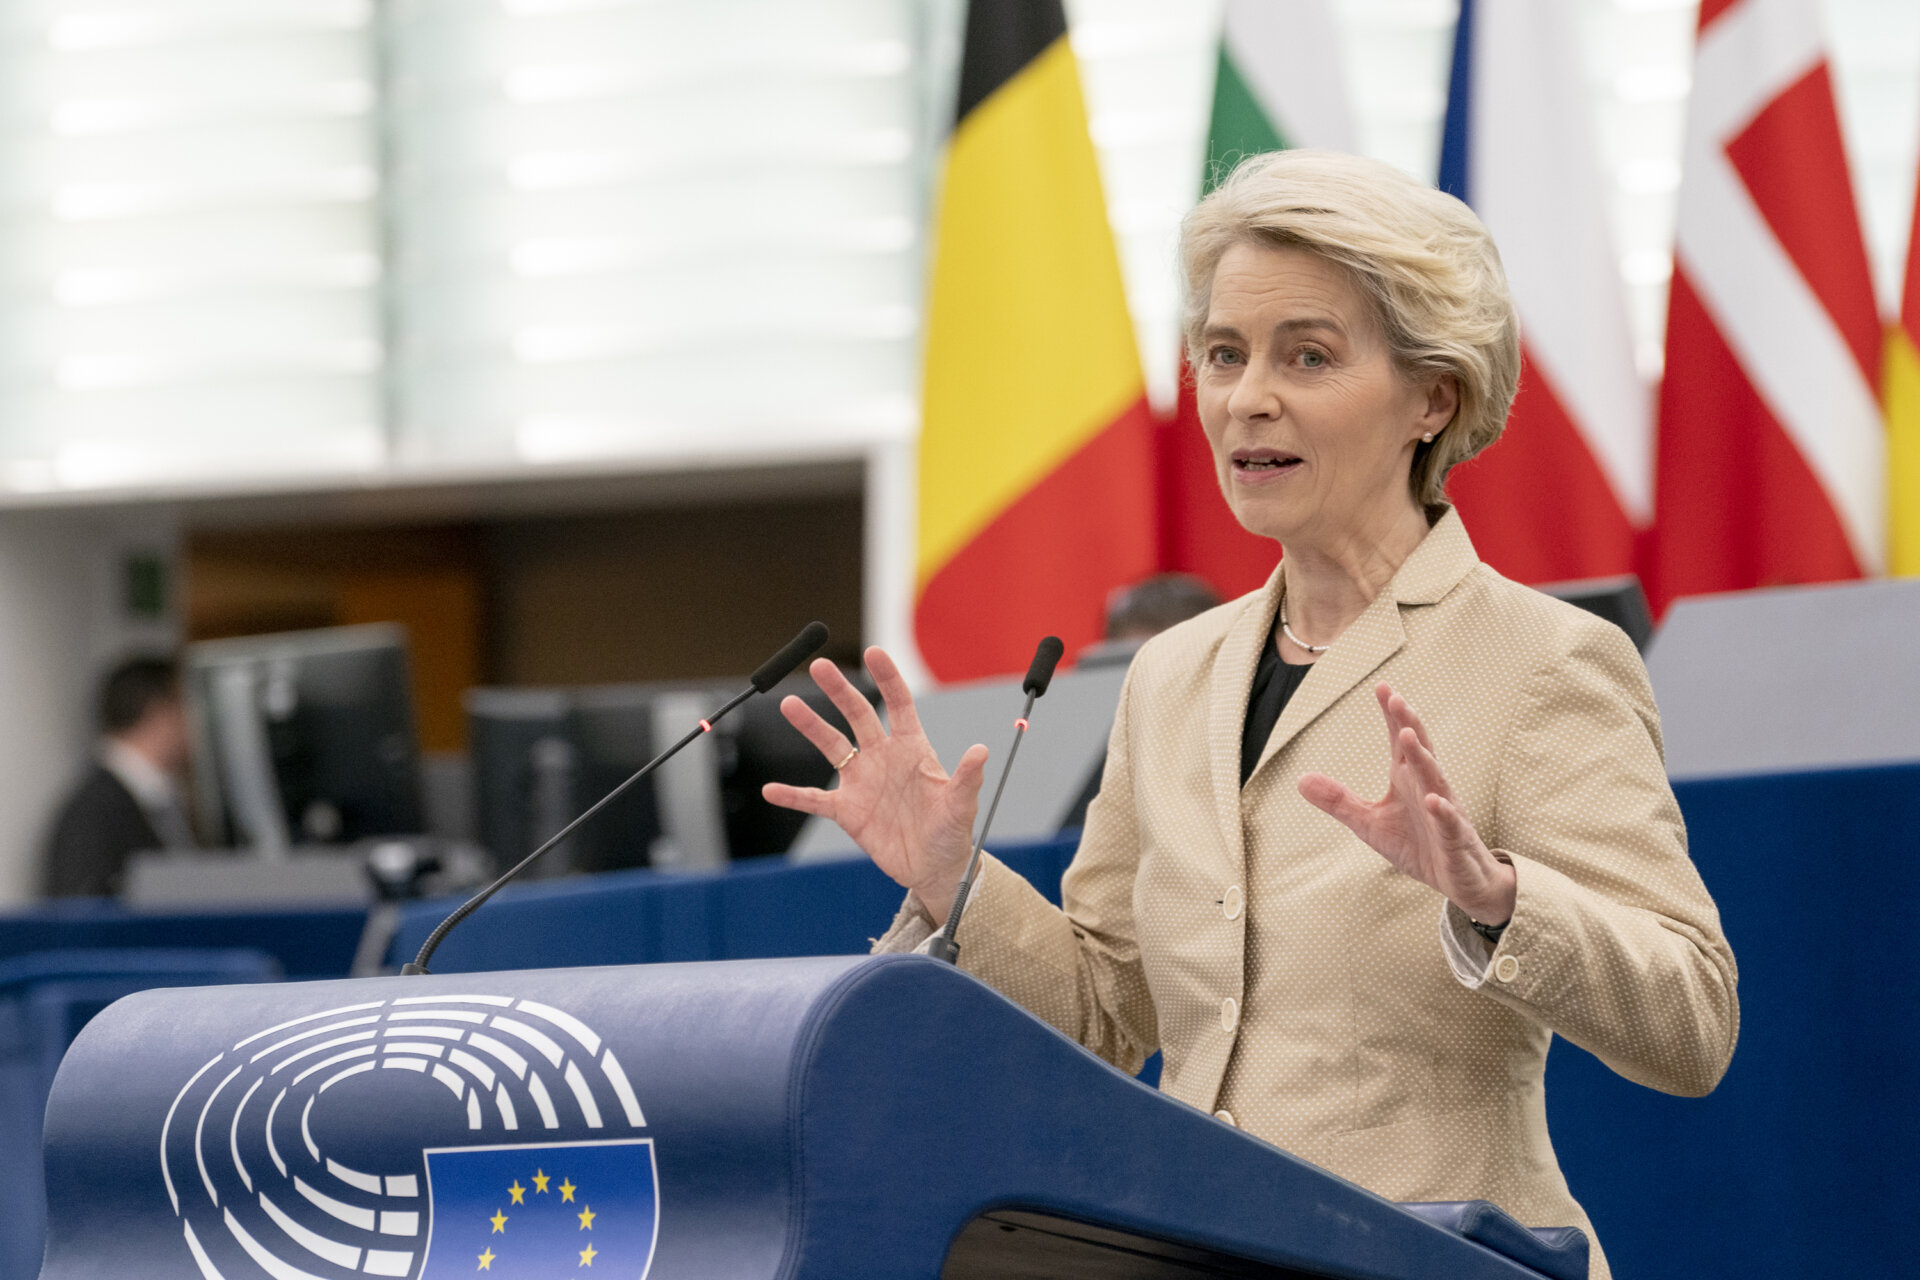 Ursula von der Leyen. Photo by European Parliament from Flickr